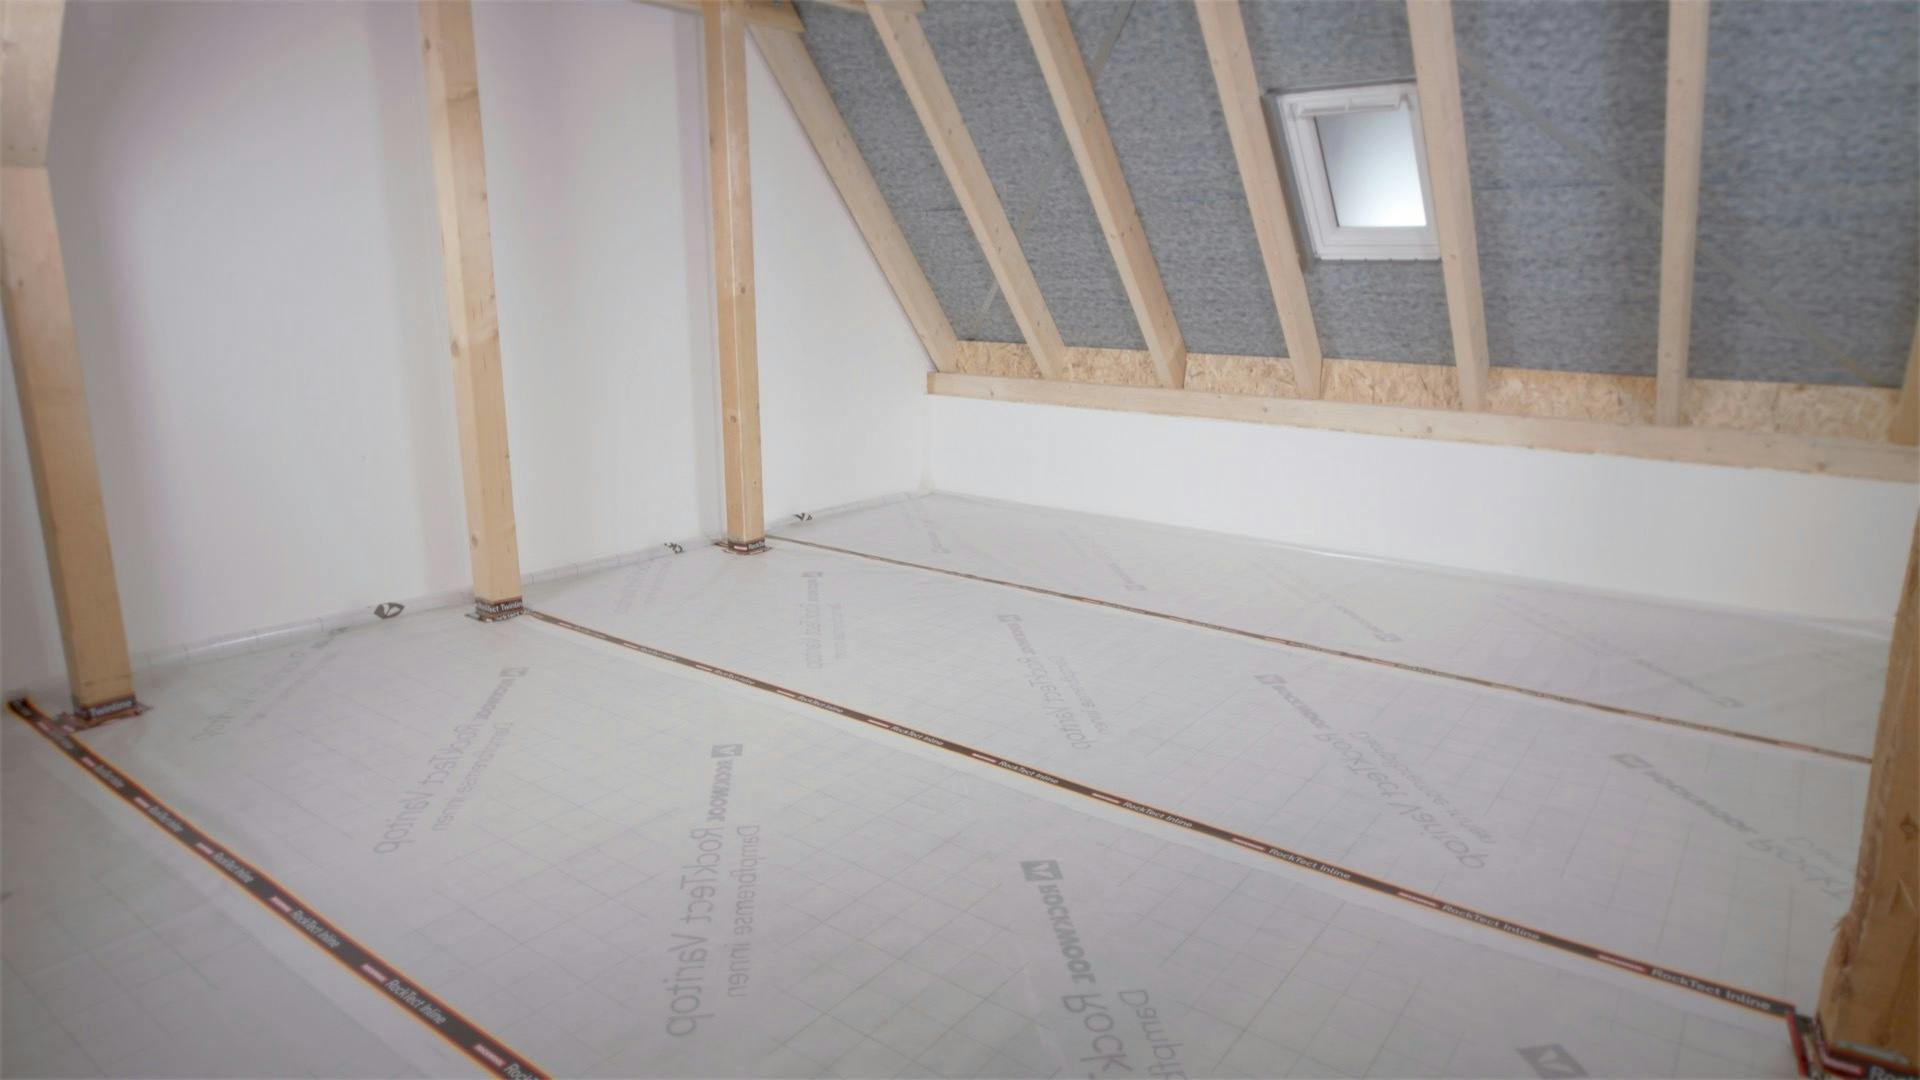 Dachbodendämmung, Verarbeitung, Anleitung, Video, luftdicht, attic insulation, loft insulation, steps, rocktect, varitop, thumbnail